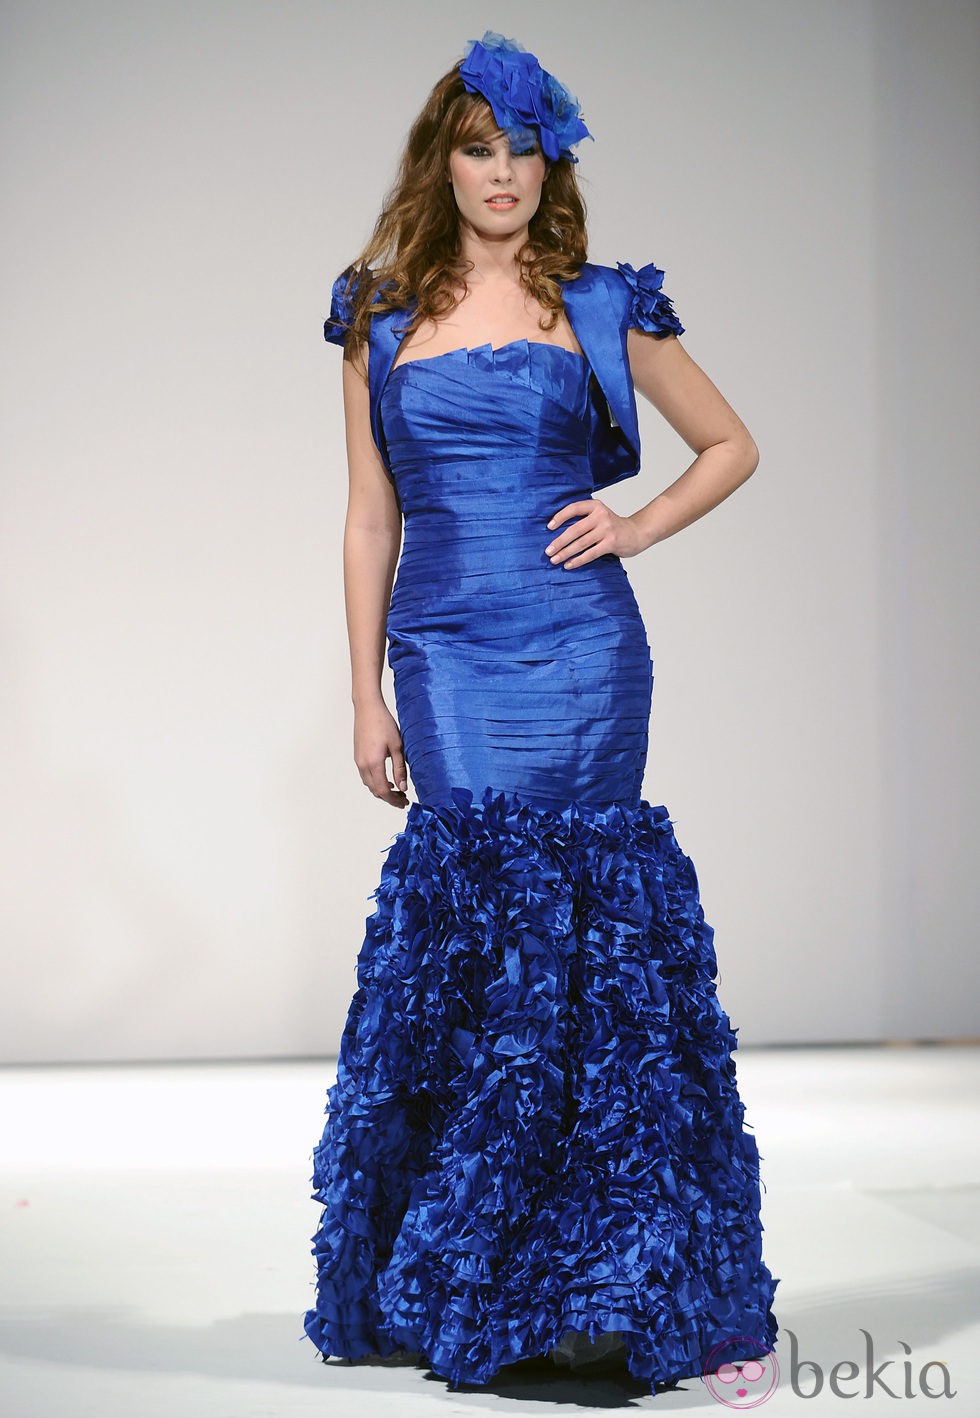 Jessica Bueno desfila con un vestido azul eléctrico para Toni Fernández